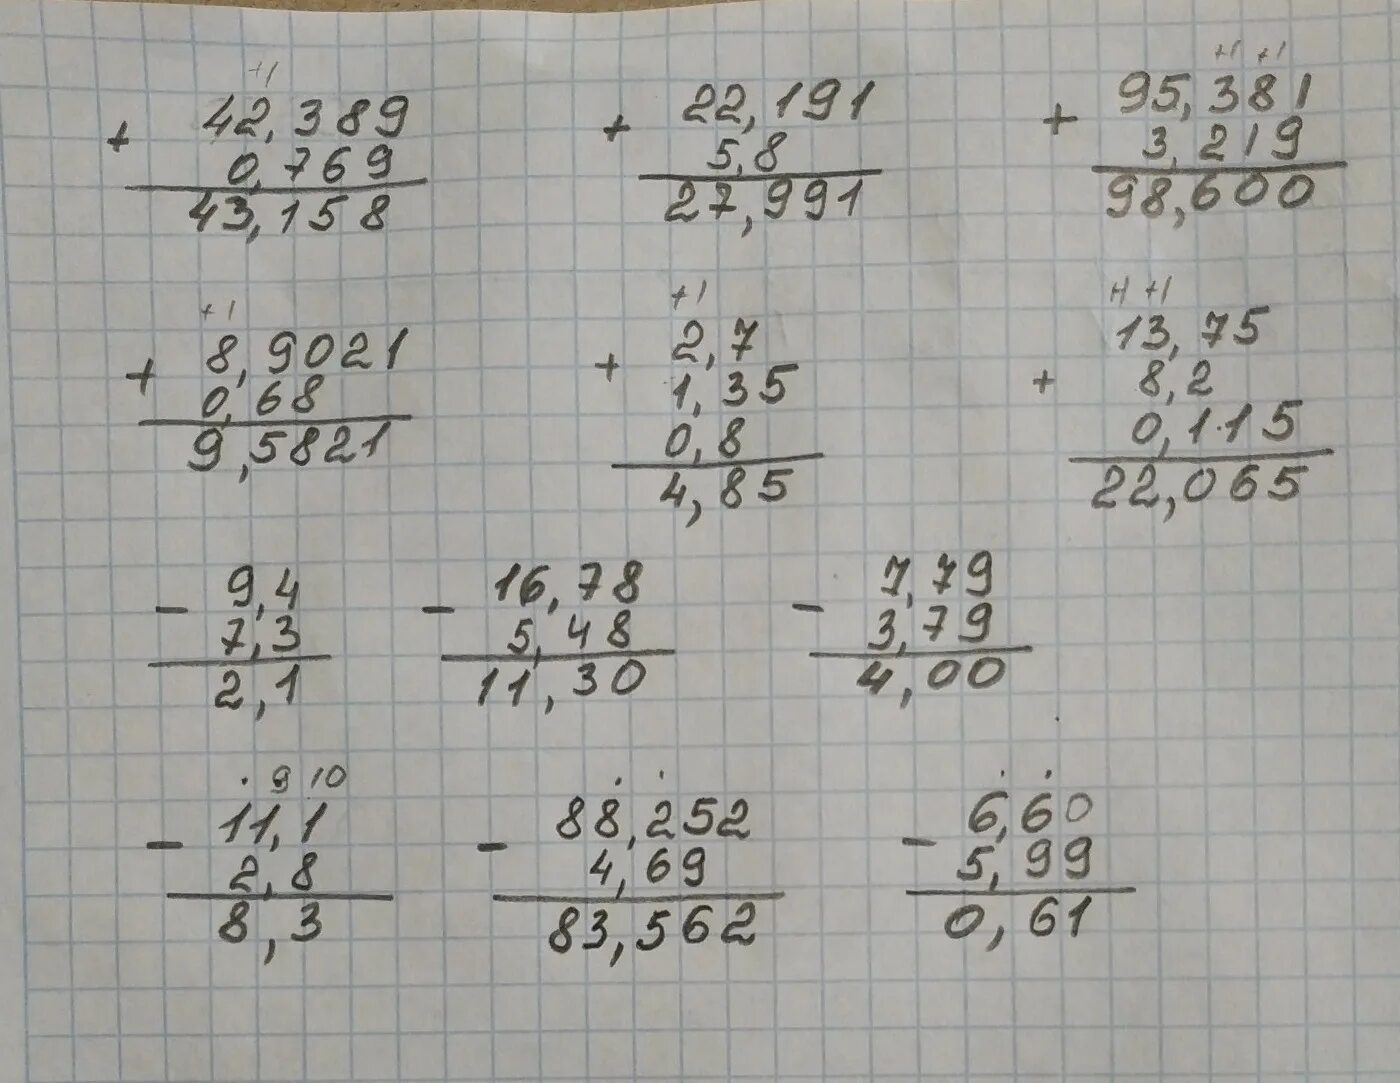 42 5 7 2 0 01. Выполните сложение 0 769 +42.389 5.8+22.191 столбиком. Выполните сложение 0 769 +42.389 столбиком. (2,2 - 4,3):0,6 Решение столбиком. Выполните сложение 1-2/7=.